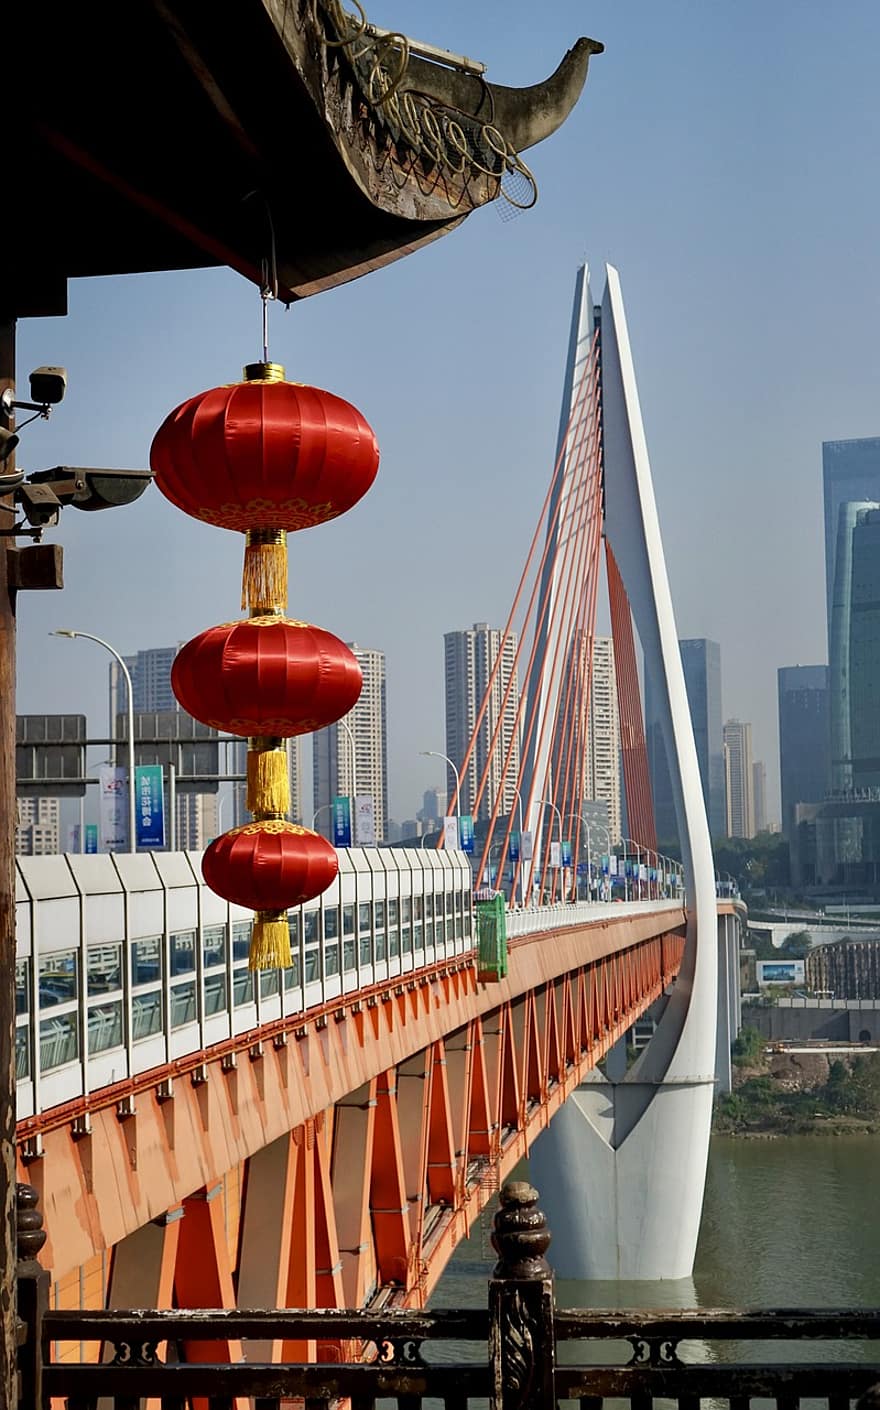 Asien, Reise, Tourismus, Qiansimen-Brücke, berühmter Platz, die Architektur, Brücke, Stadtbild, Transport, gebaute Struktur, Wolkenkratzer